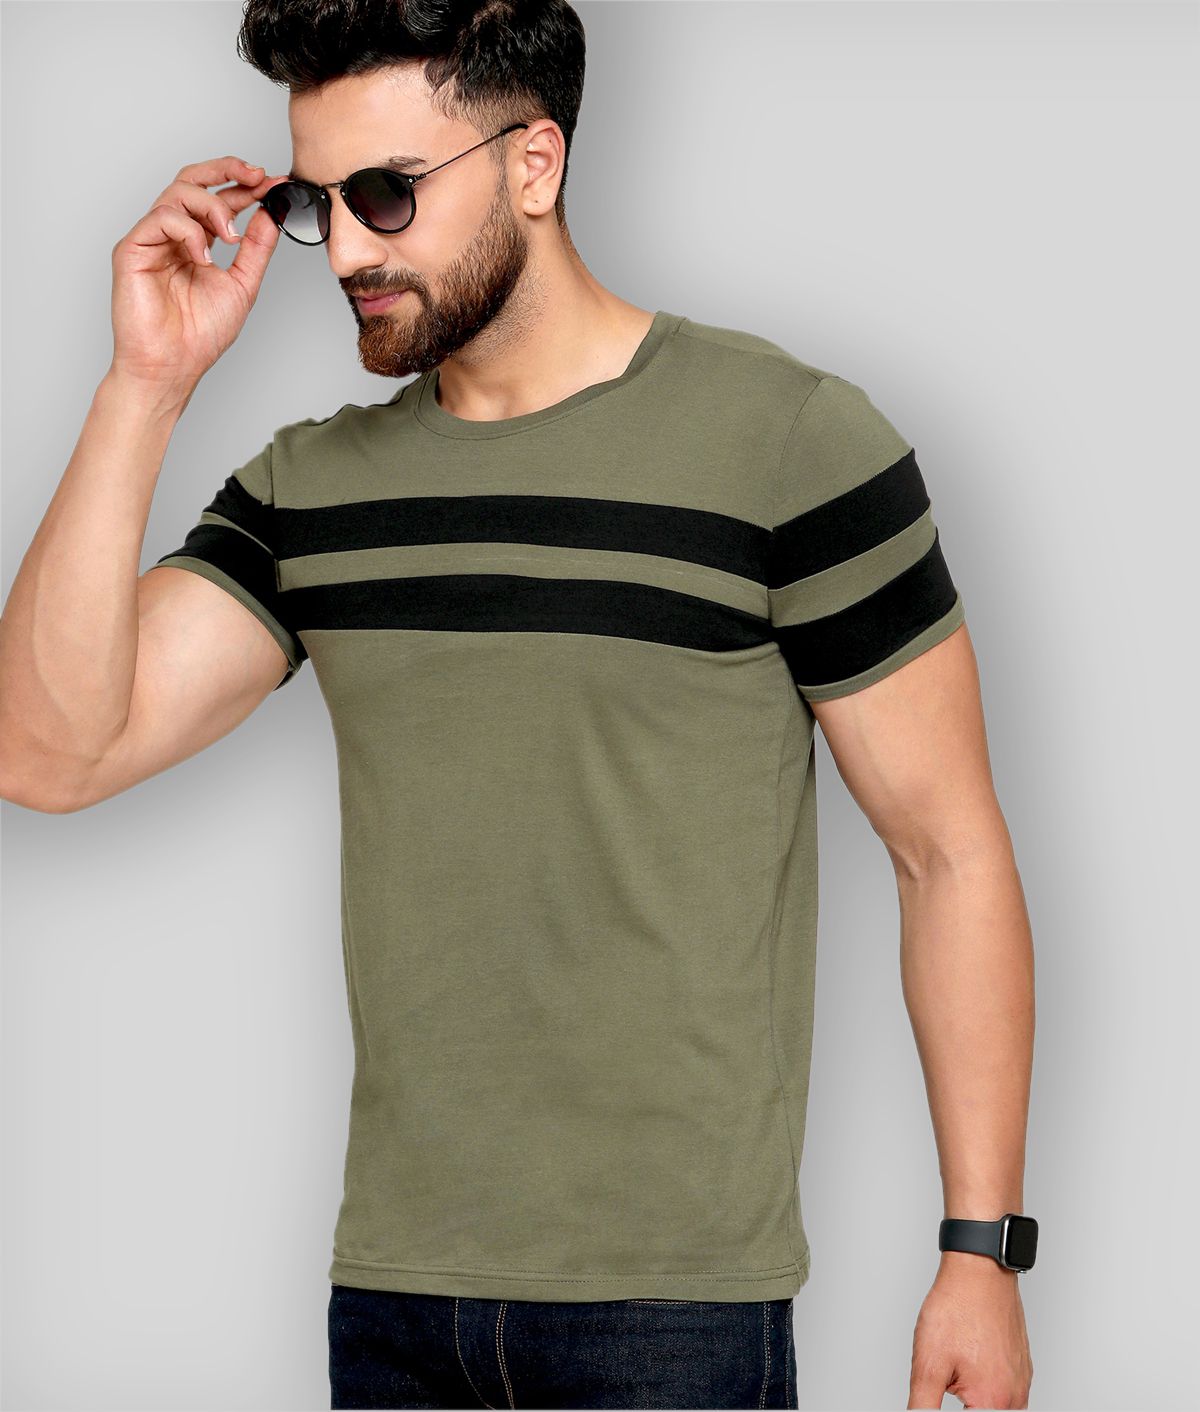     			AUSK - Multicolor Cotton Regular Fit Men's T-Shirt ( Pack of 1 )